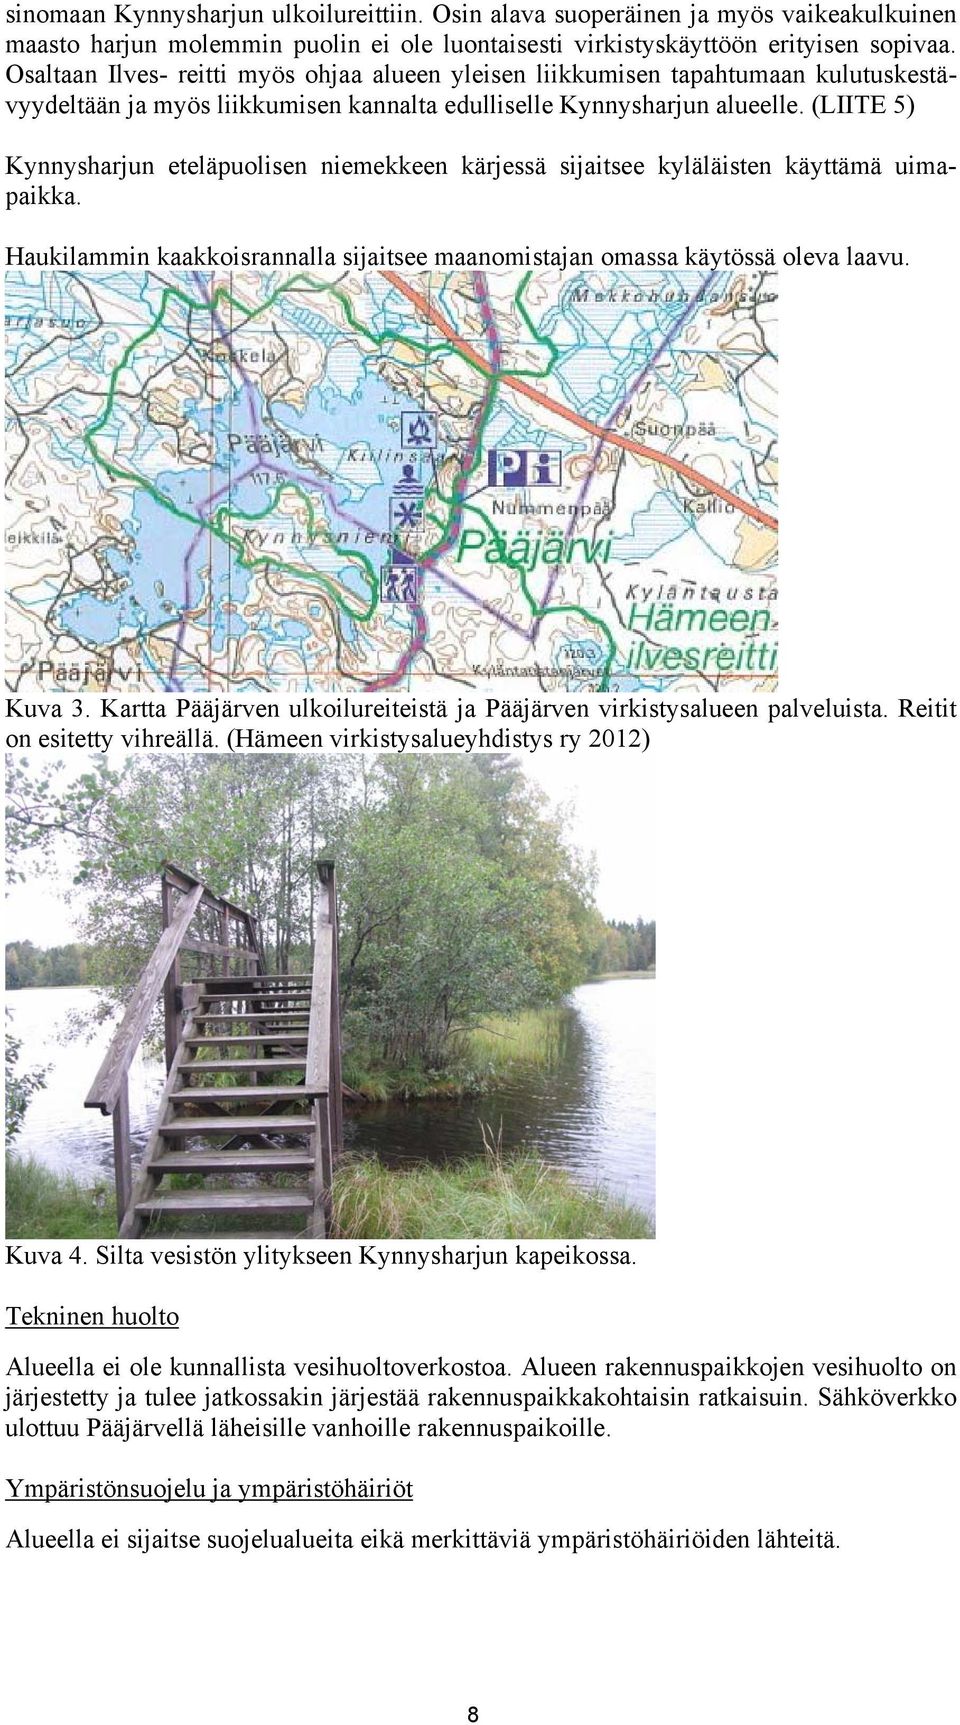 (LIITE 5) Kynnysharjun eteläpuolisen niemekkeen kärjessä sijaitsee kyläläisten käyttämä uimapaikka. Haukilammin kaakkoisrannalla sijaitsee maanomistajan omassa käytössä oleva laavu. Kuva 3.